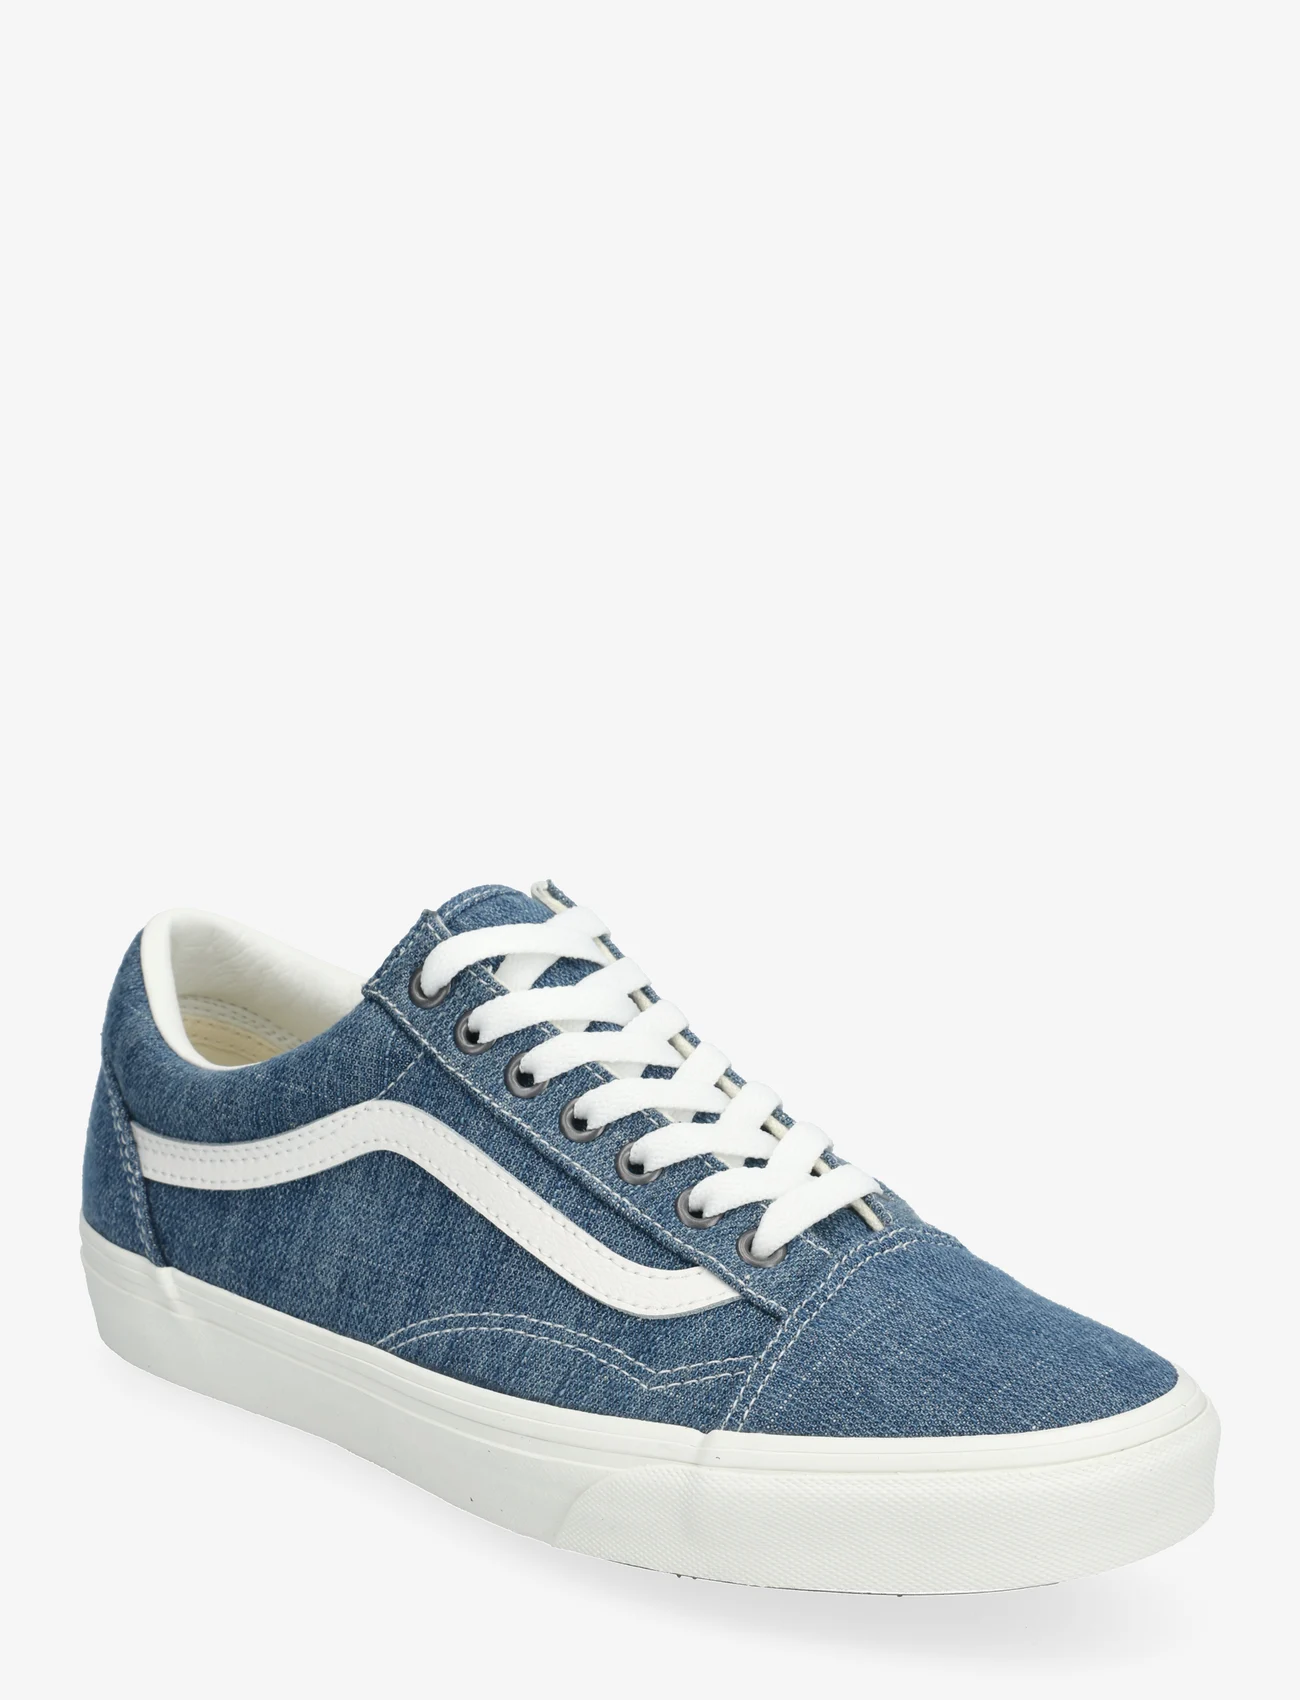 VANS - Old Skool - lave sneakers - threaded denim blue/white - 0